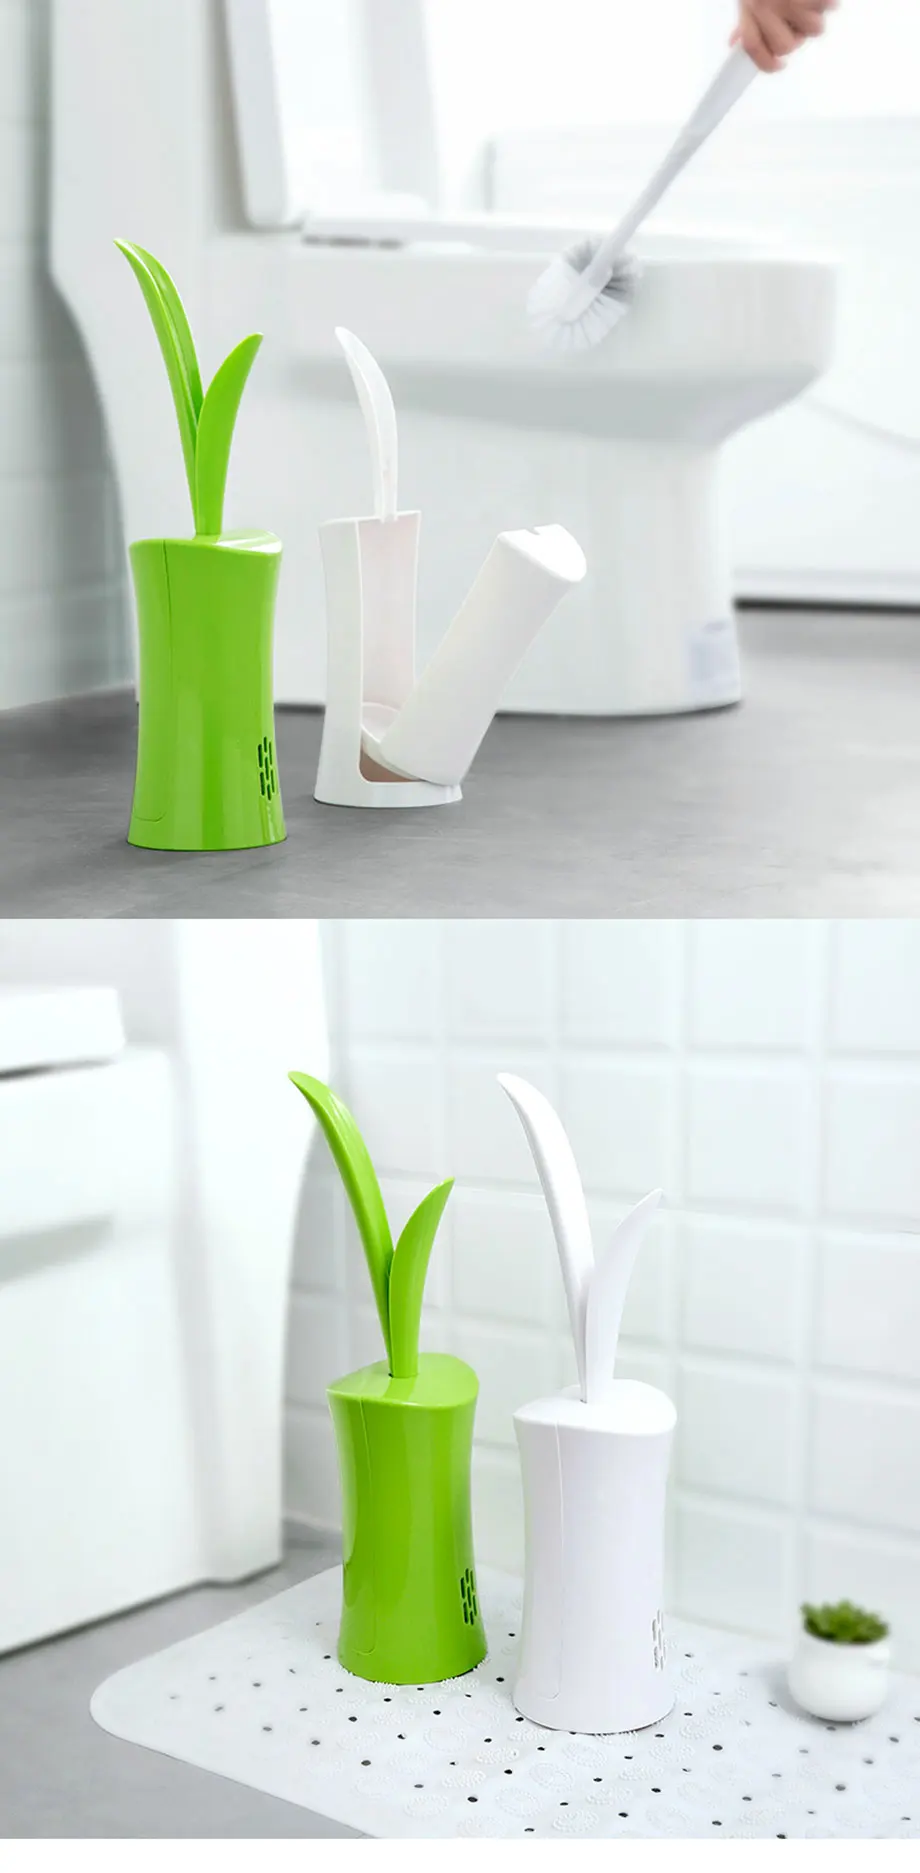 JPZYLFKZL2018 новые творческие ABS туалетный ершик для унитаза очистки щетки Ванная комната Длинные ручки мыть туалет щетка для очистки инструмент